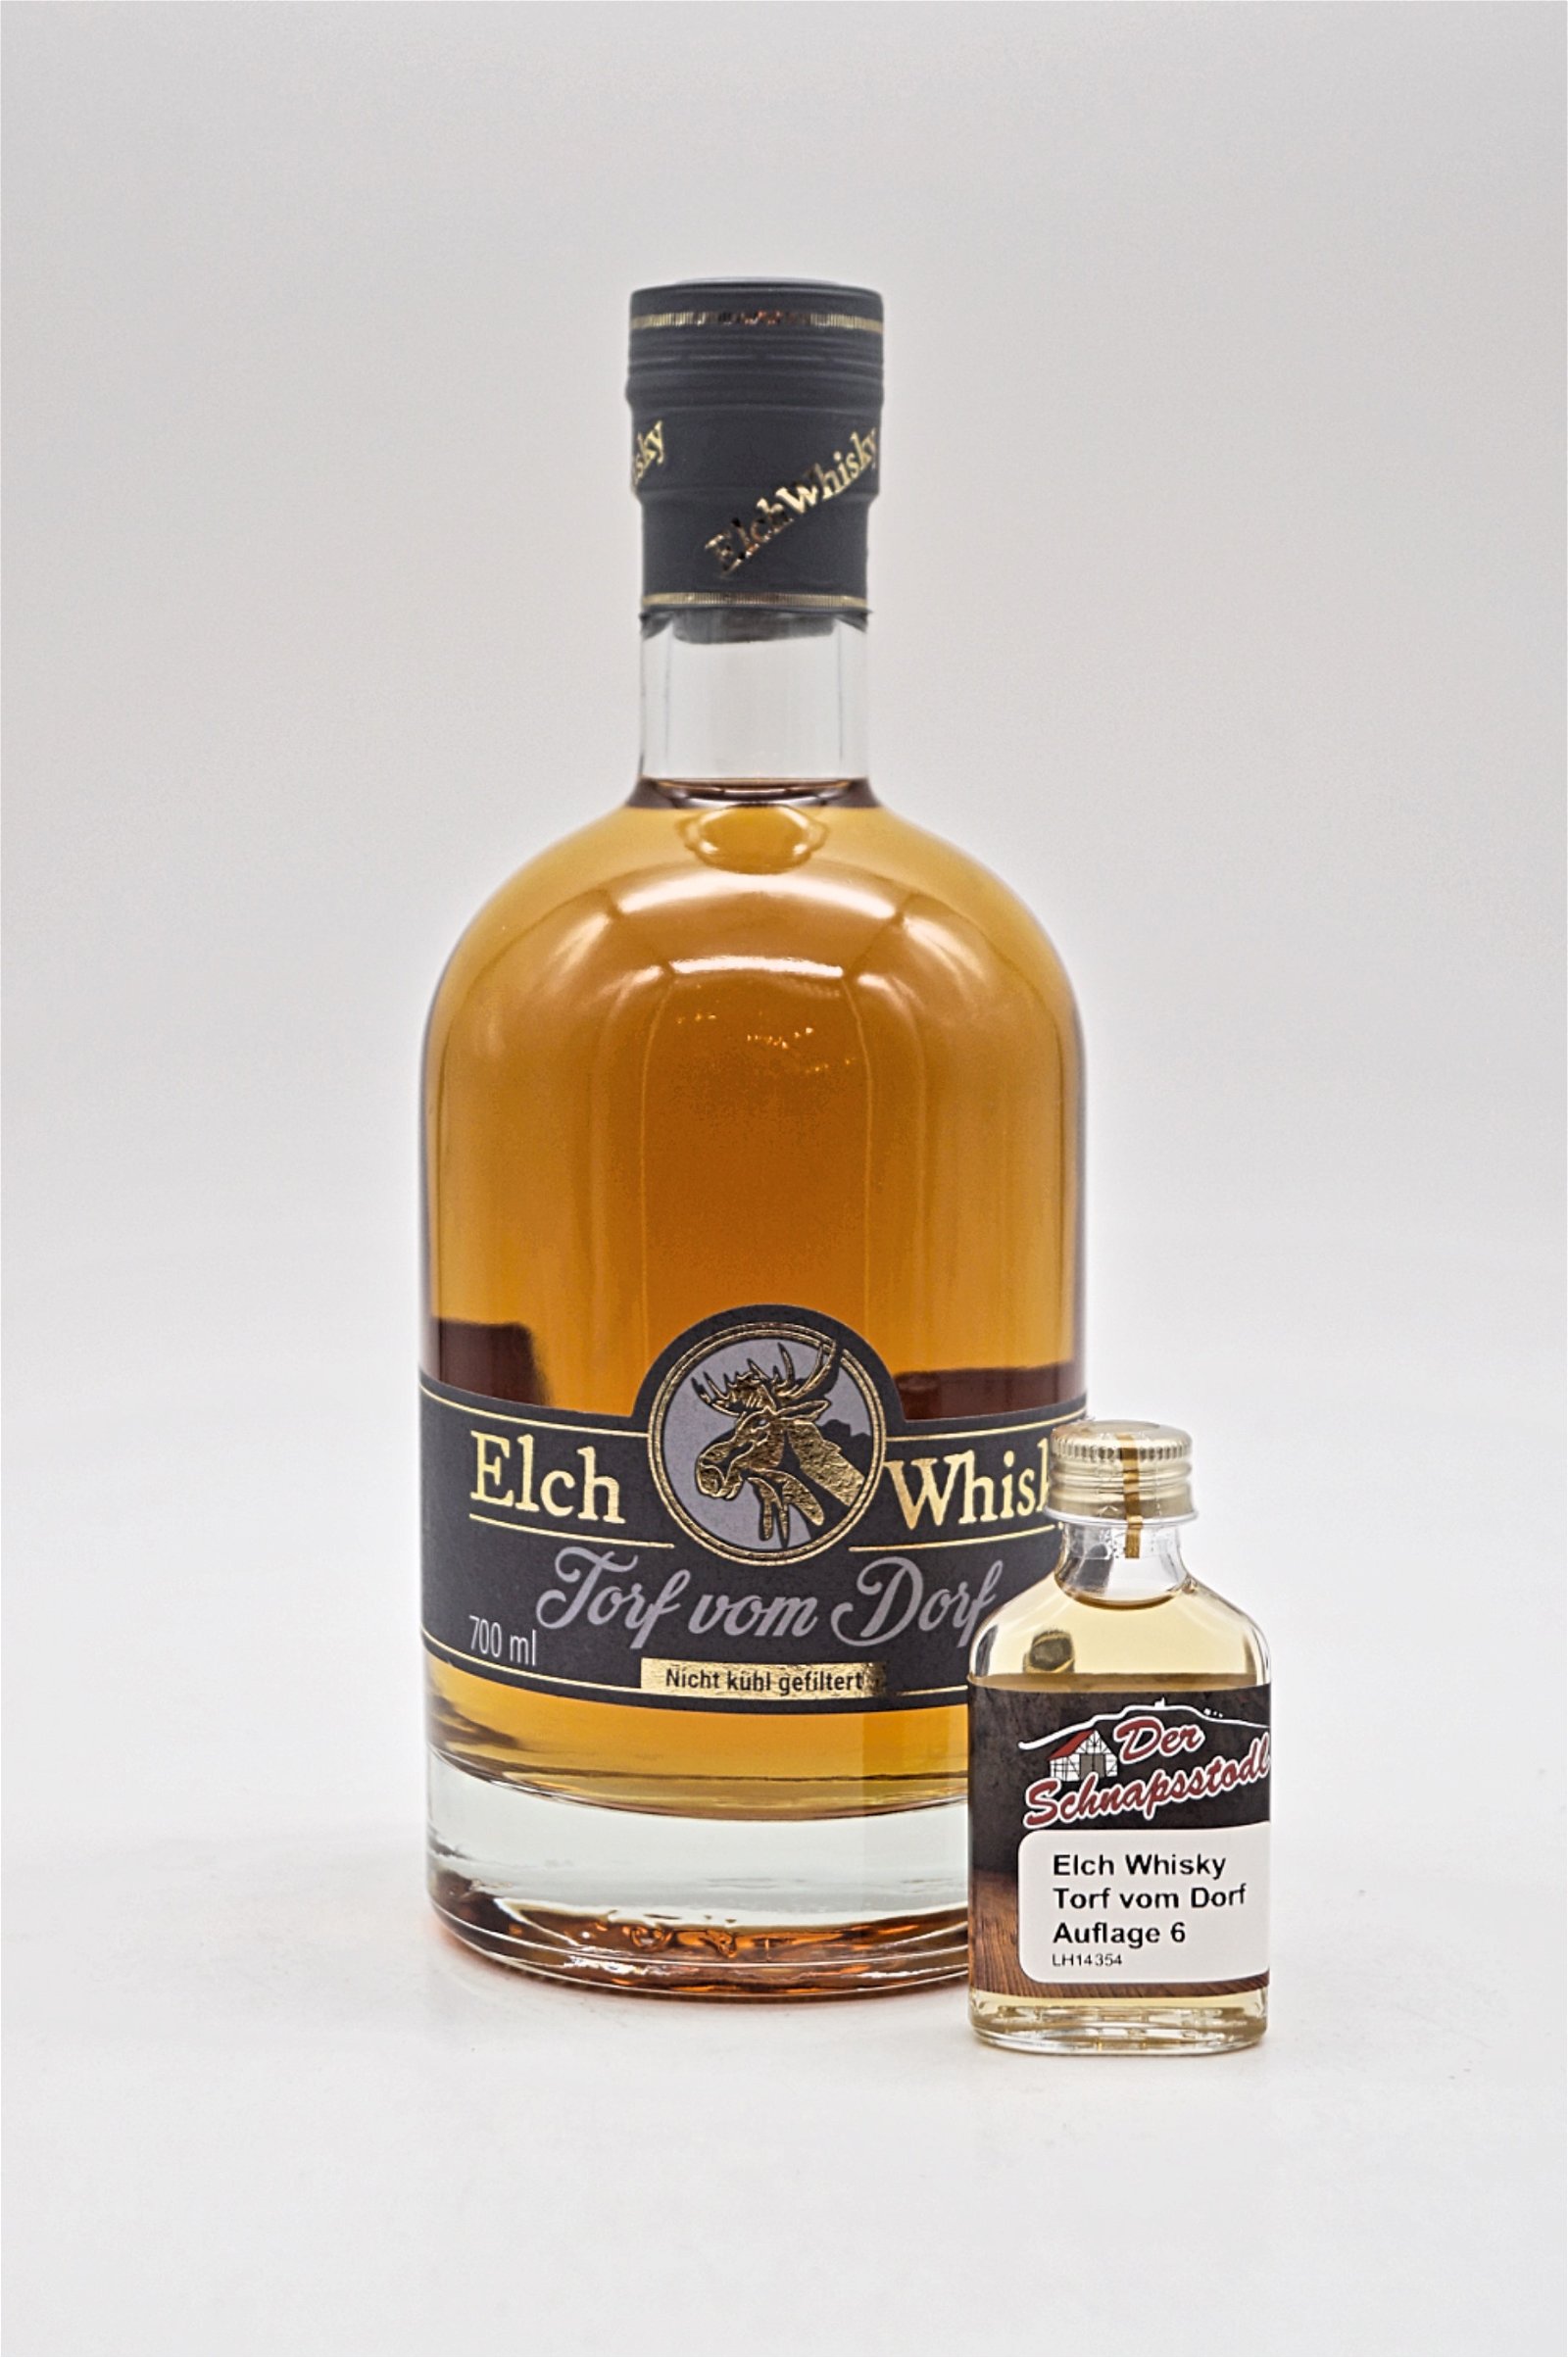 Elch Whisky Torf vom Dorf (Auflage 6) Sample 20 ml